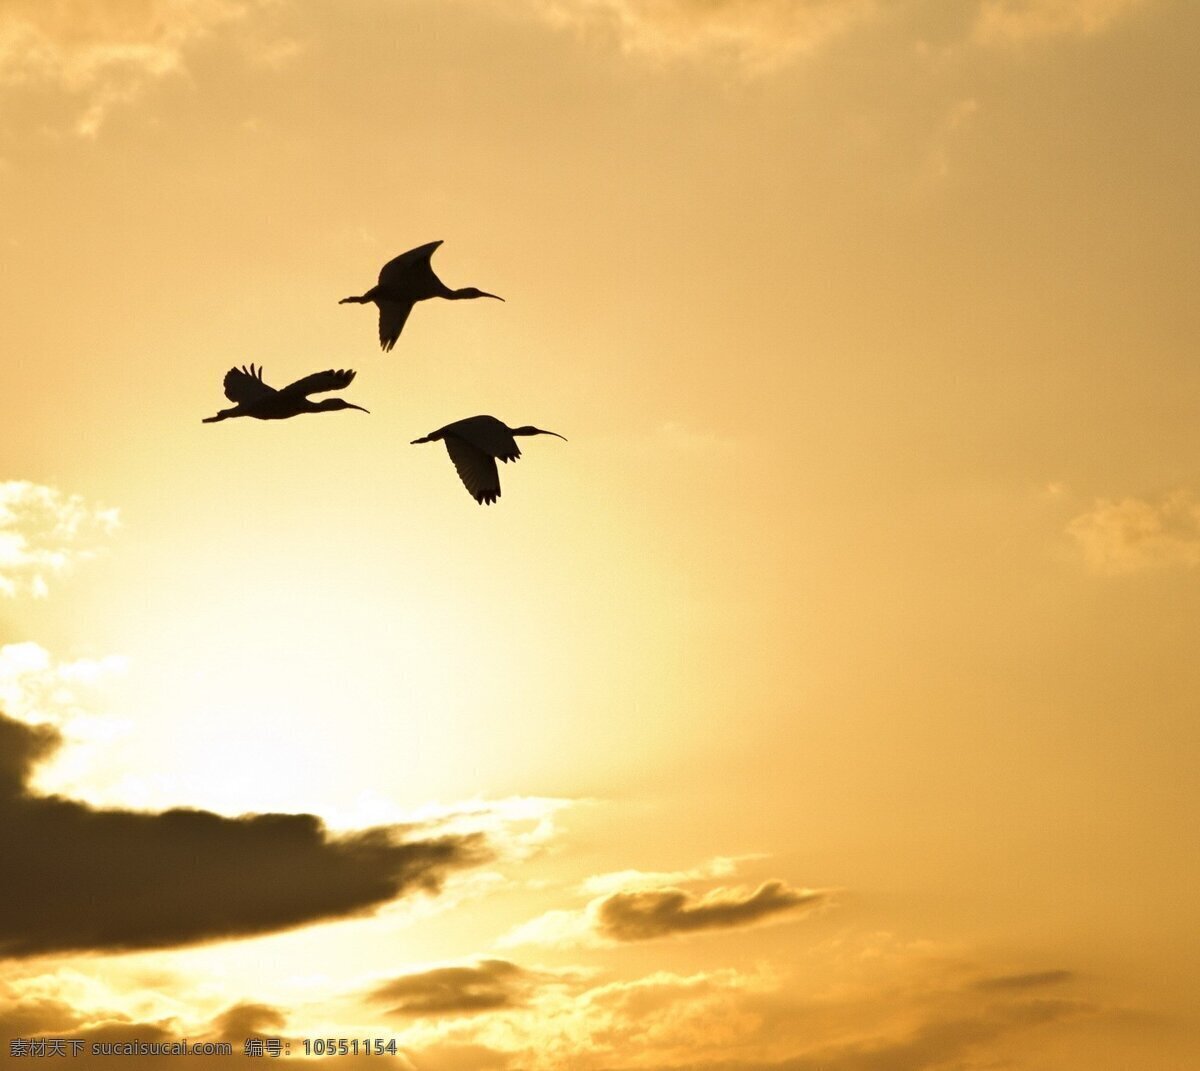 大雁 壁纸 动物 自然 黄昏 落日 晚霞 飞翔 共享 图 天地 灵宠 生物世界 鸟类